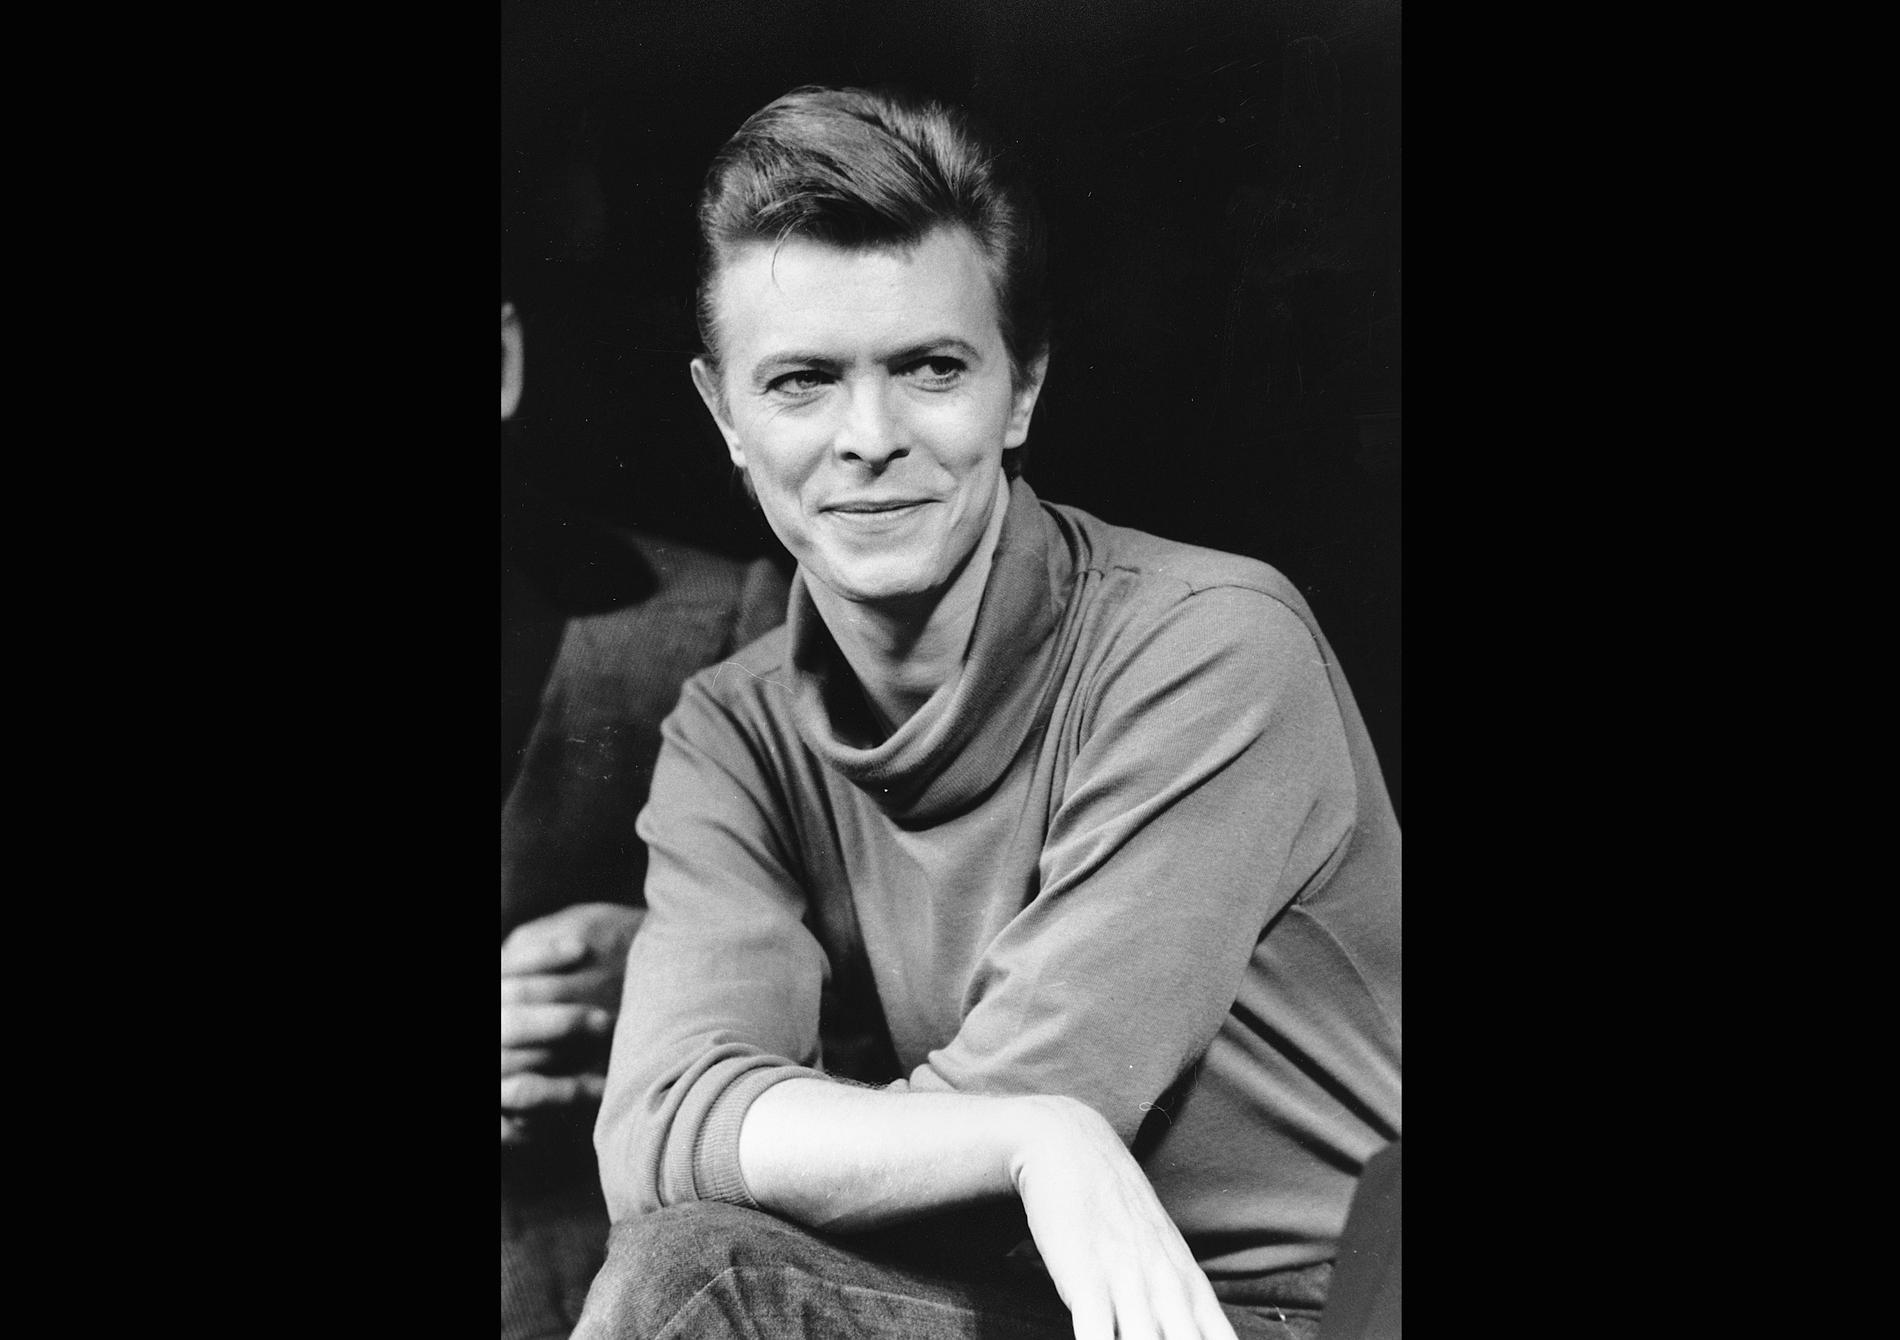 David Bowie 1980 då han uppträdde på Broadway i "Elephant man". Arkivbild.